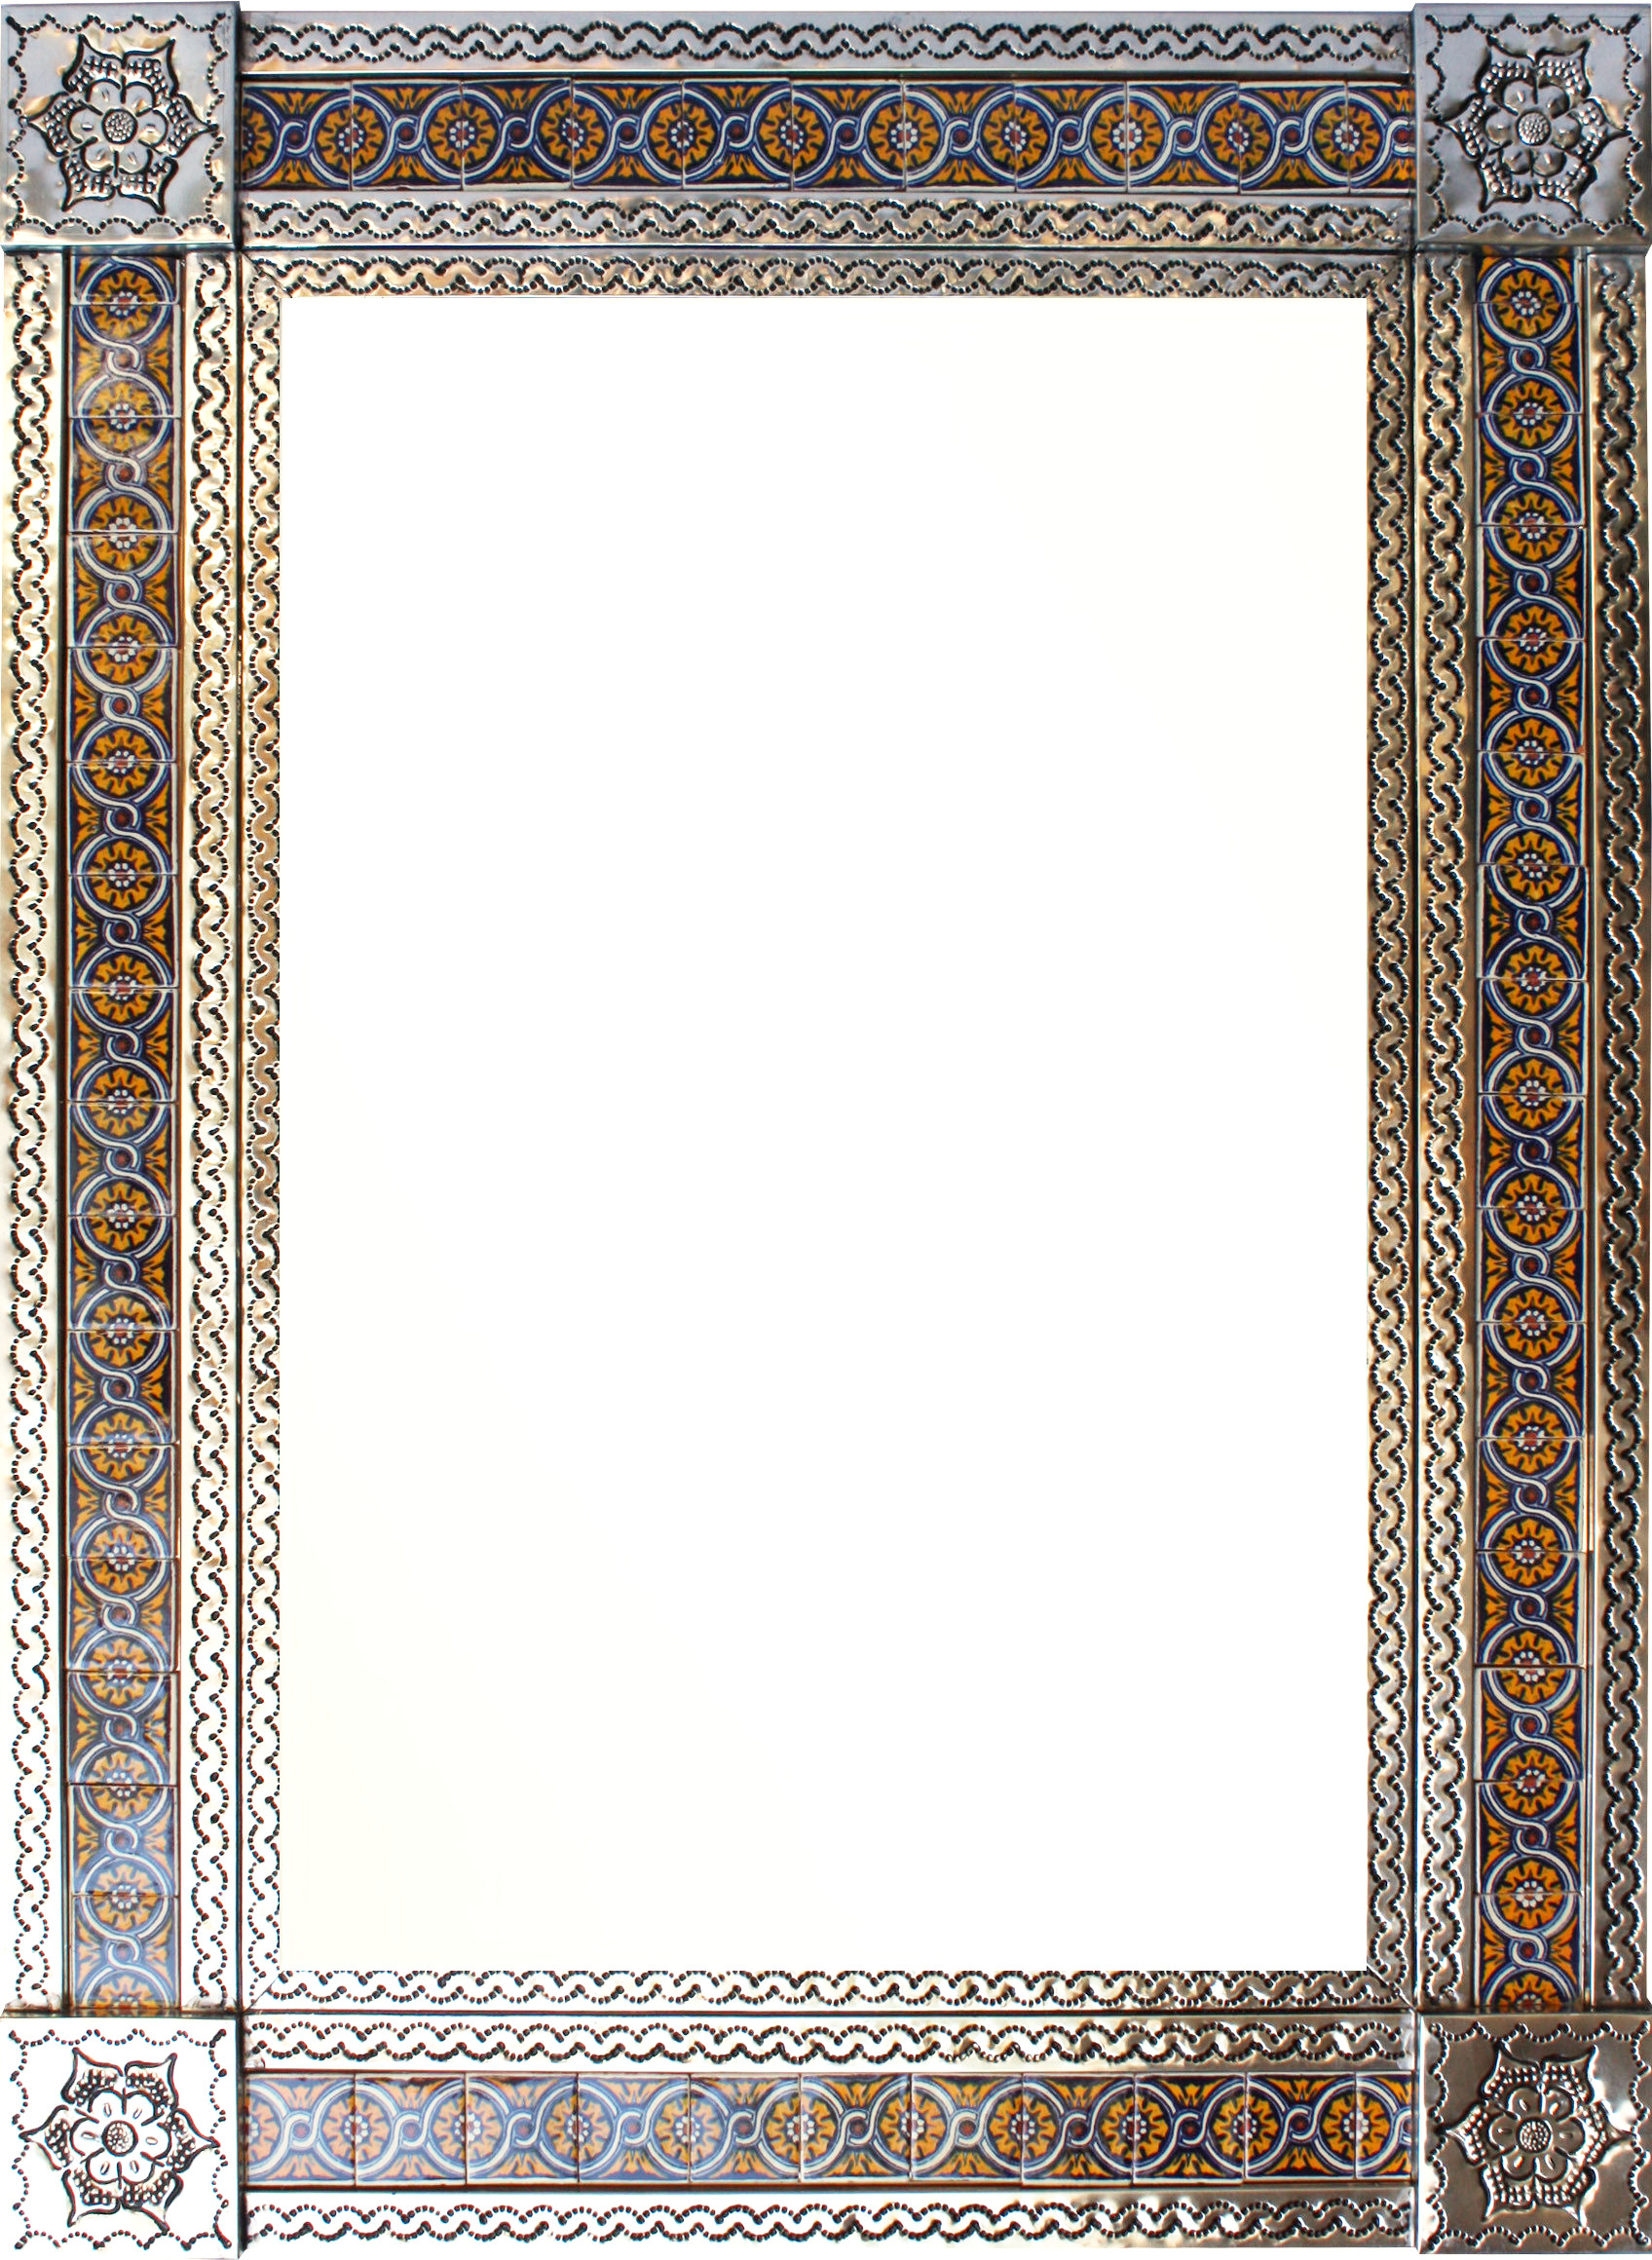 TalaMex Large Silver Chain Talavera Tile Mexican Mirror